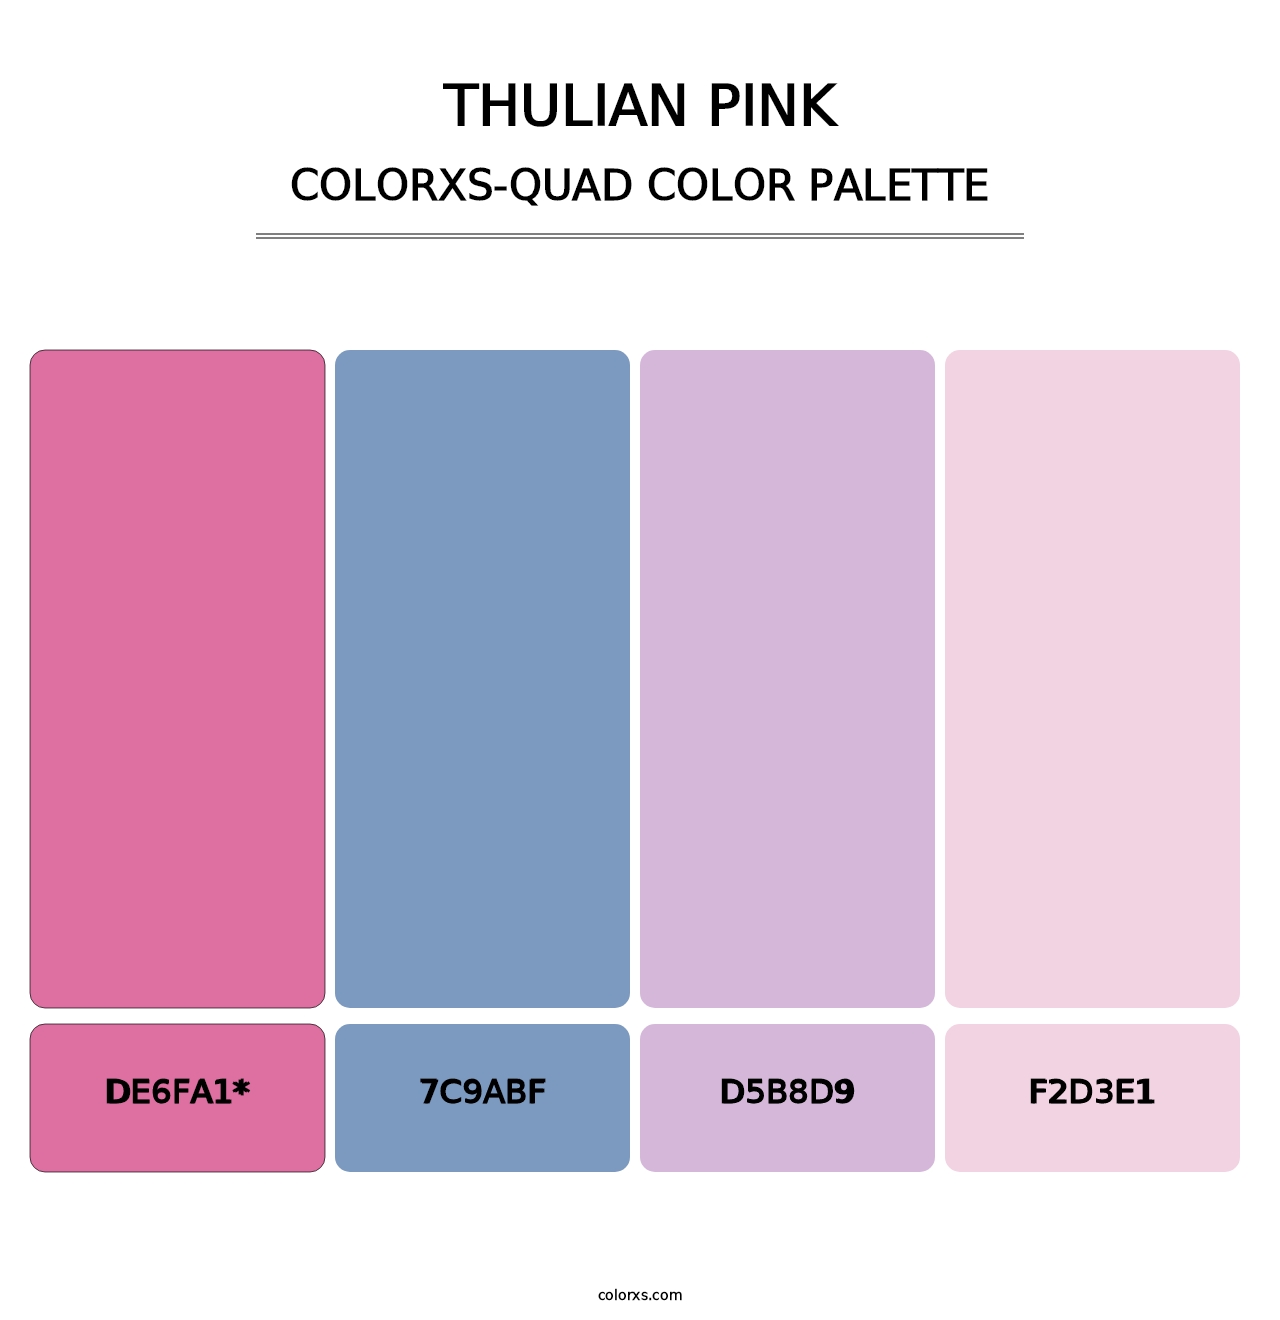 Thulian Pink - Colorxs Quad Palette